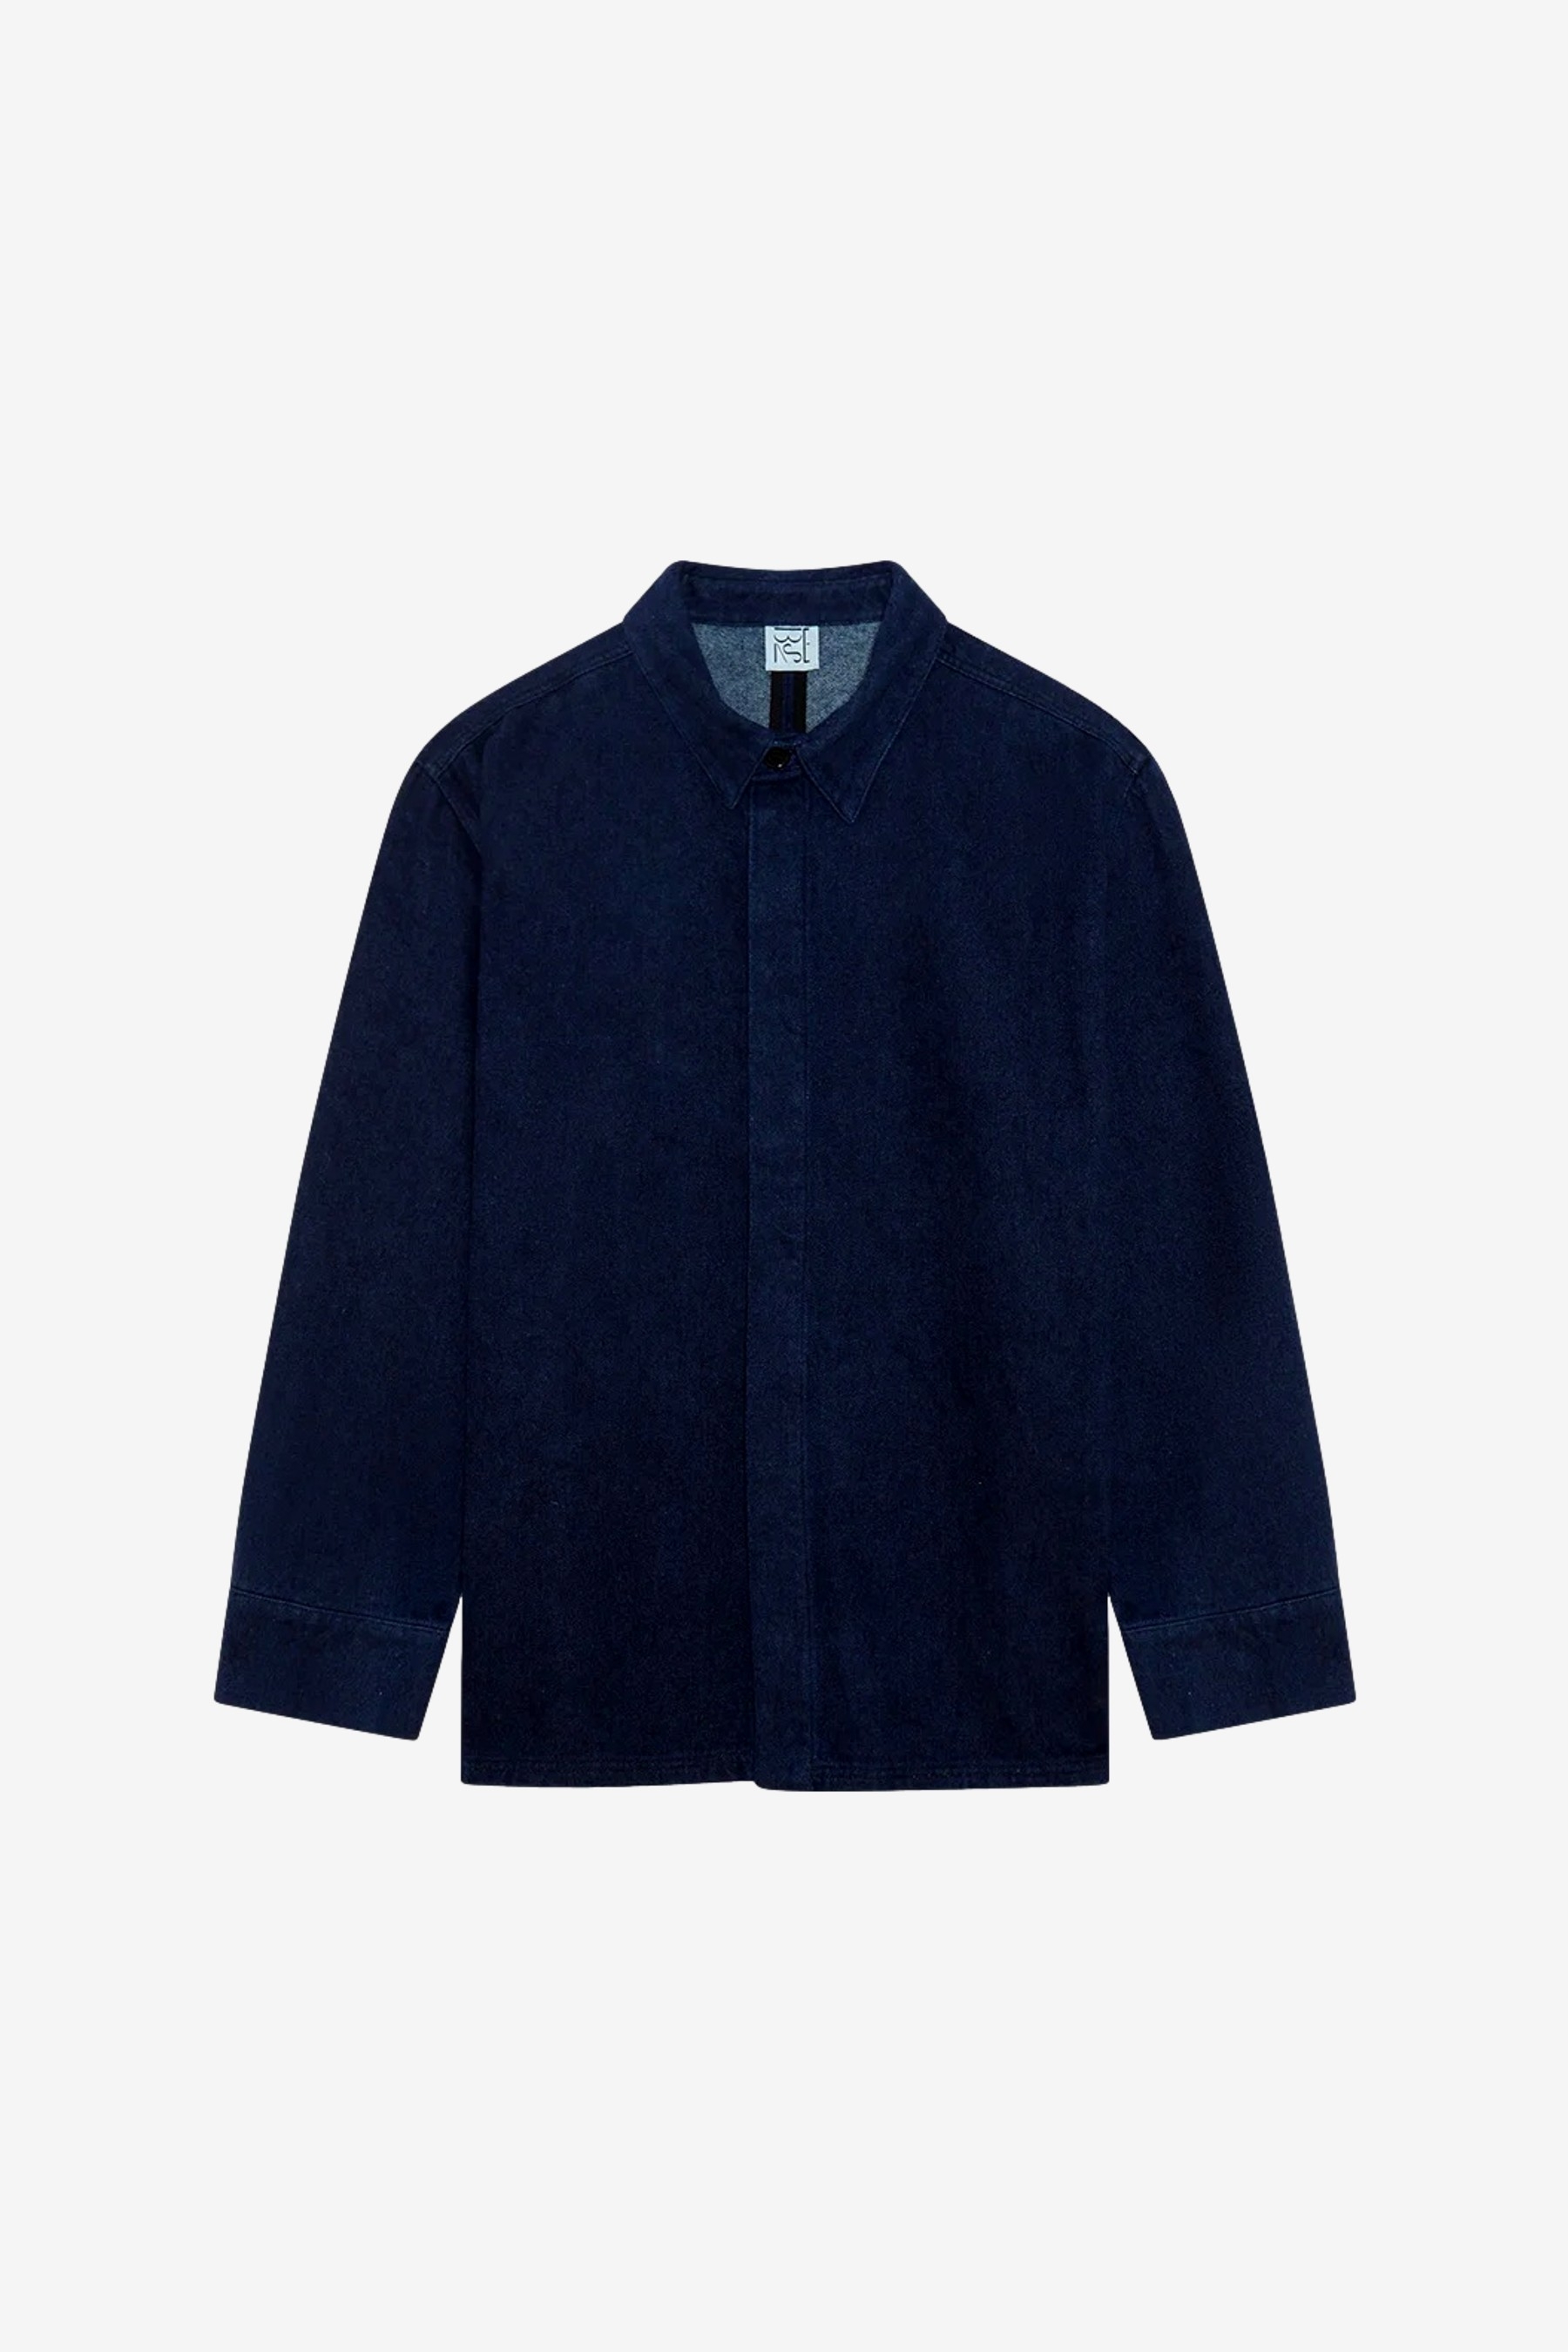 Indre Jacket in Dark Blue - Baserange | Afura Store